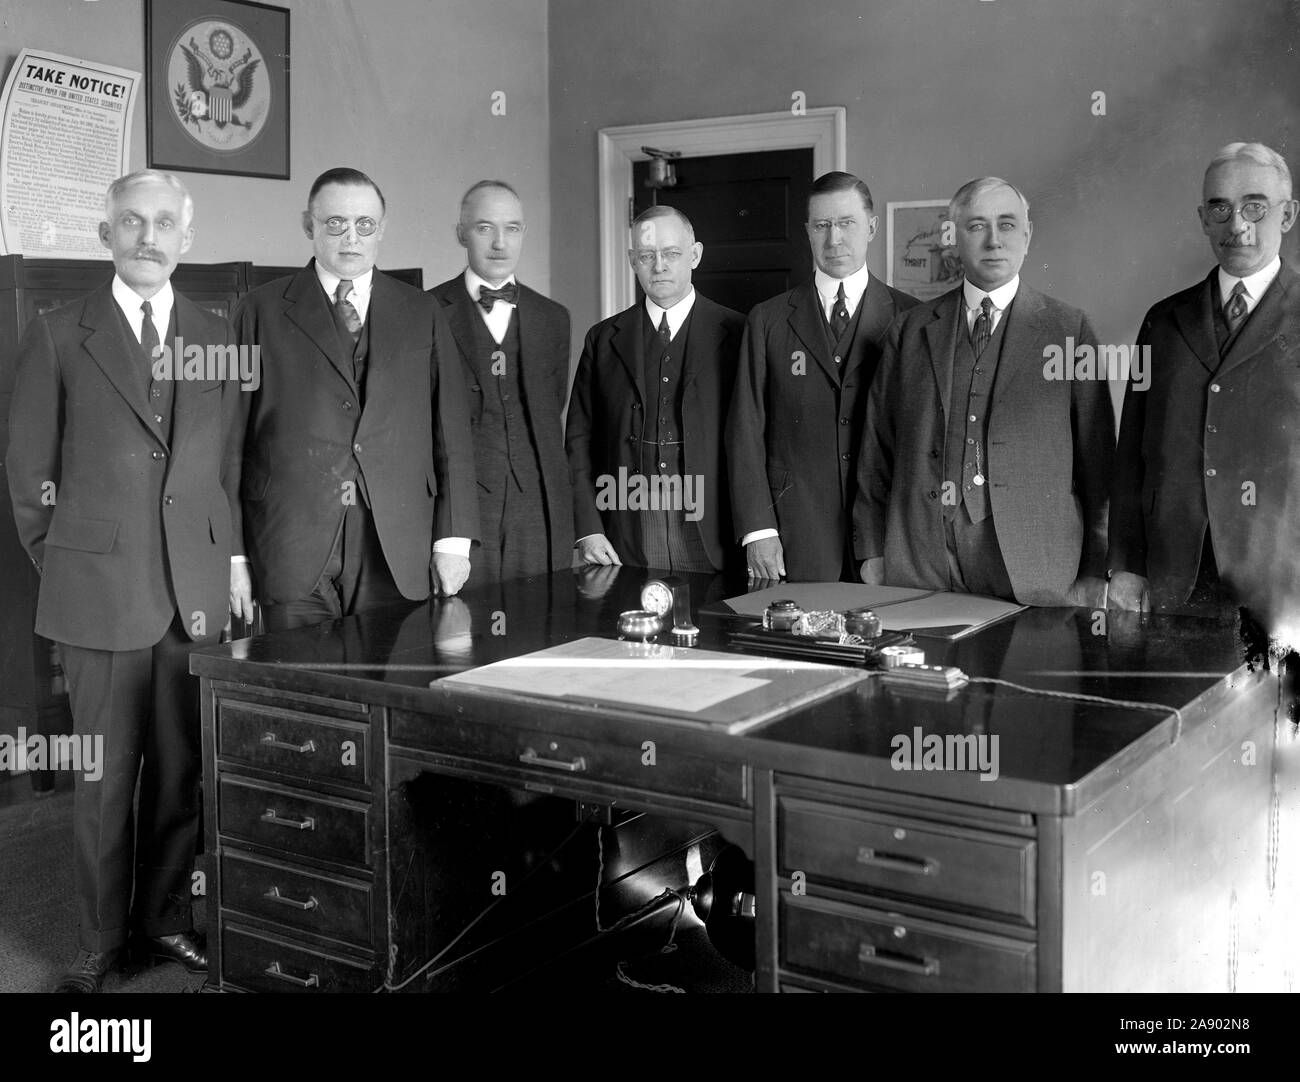 La Junta de la Reserva Federal, de izquierda a derecha: s'y Mellon; W.P.G. Harding, Vice Gobernadora. Edmund Platt; Charles S. Hamlin, Adolph Miller; Contralor D.R. Crissinger, y J.R. Mitchell, ca. 1905-1945 Foto de stock